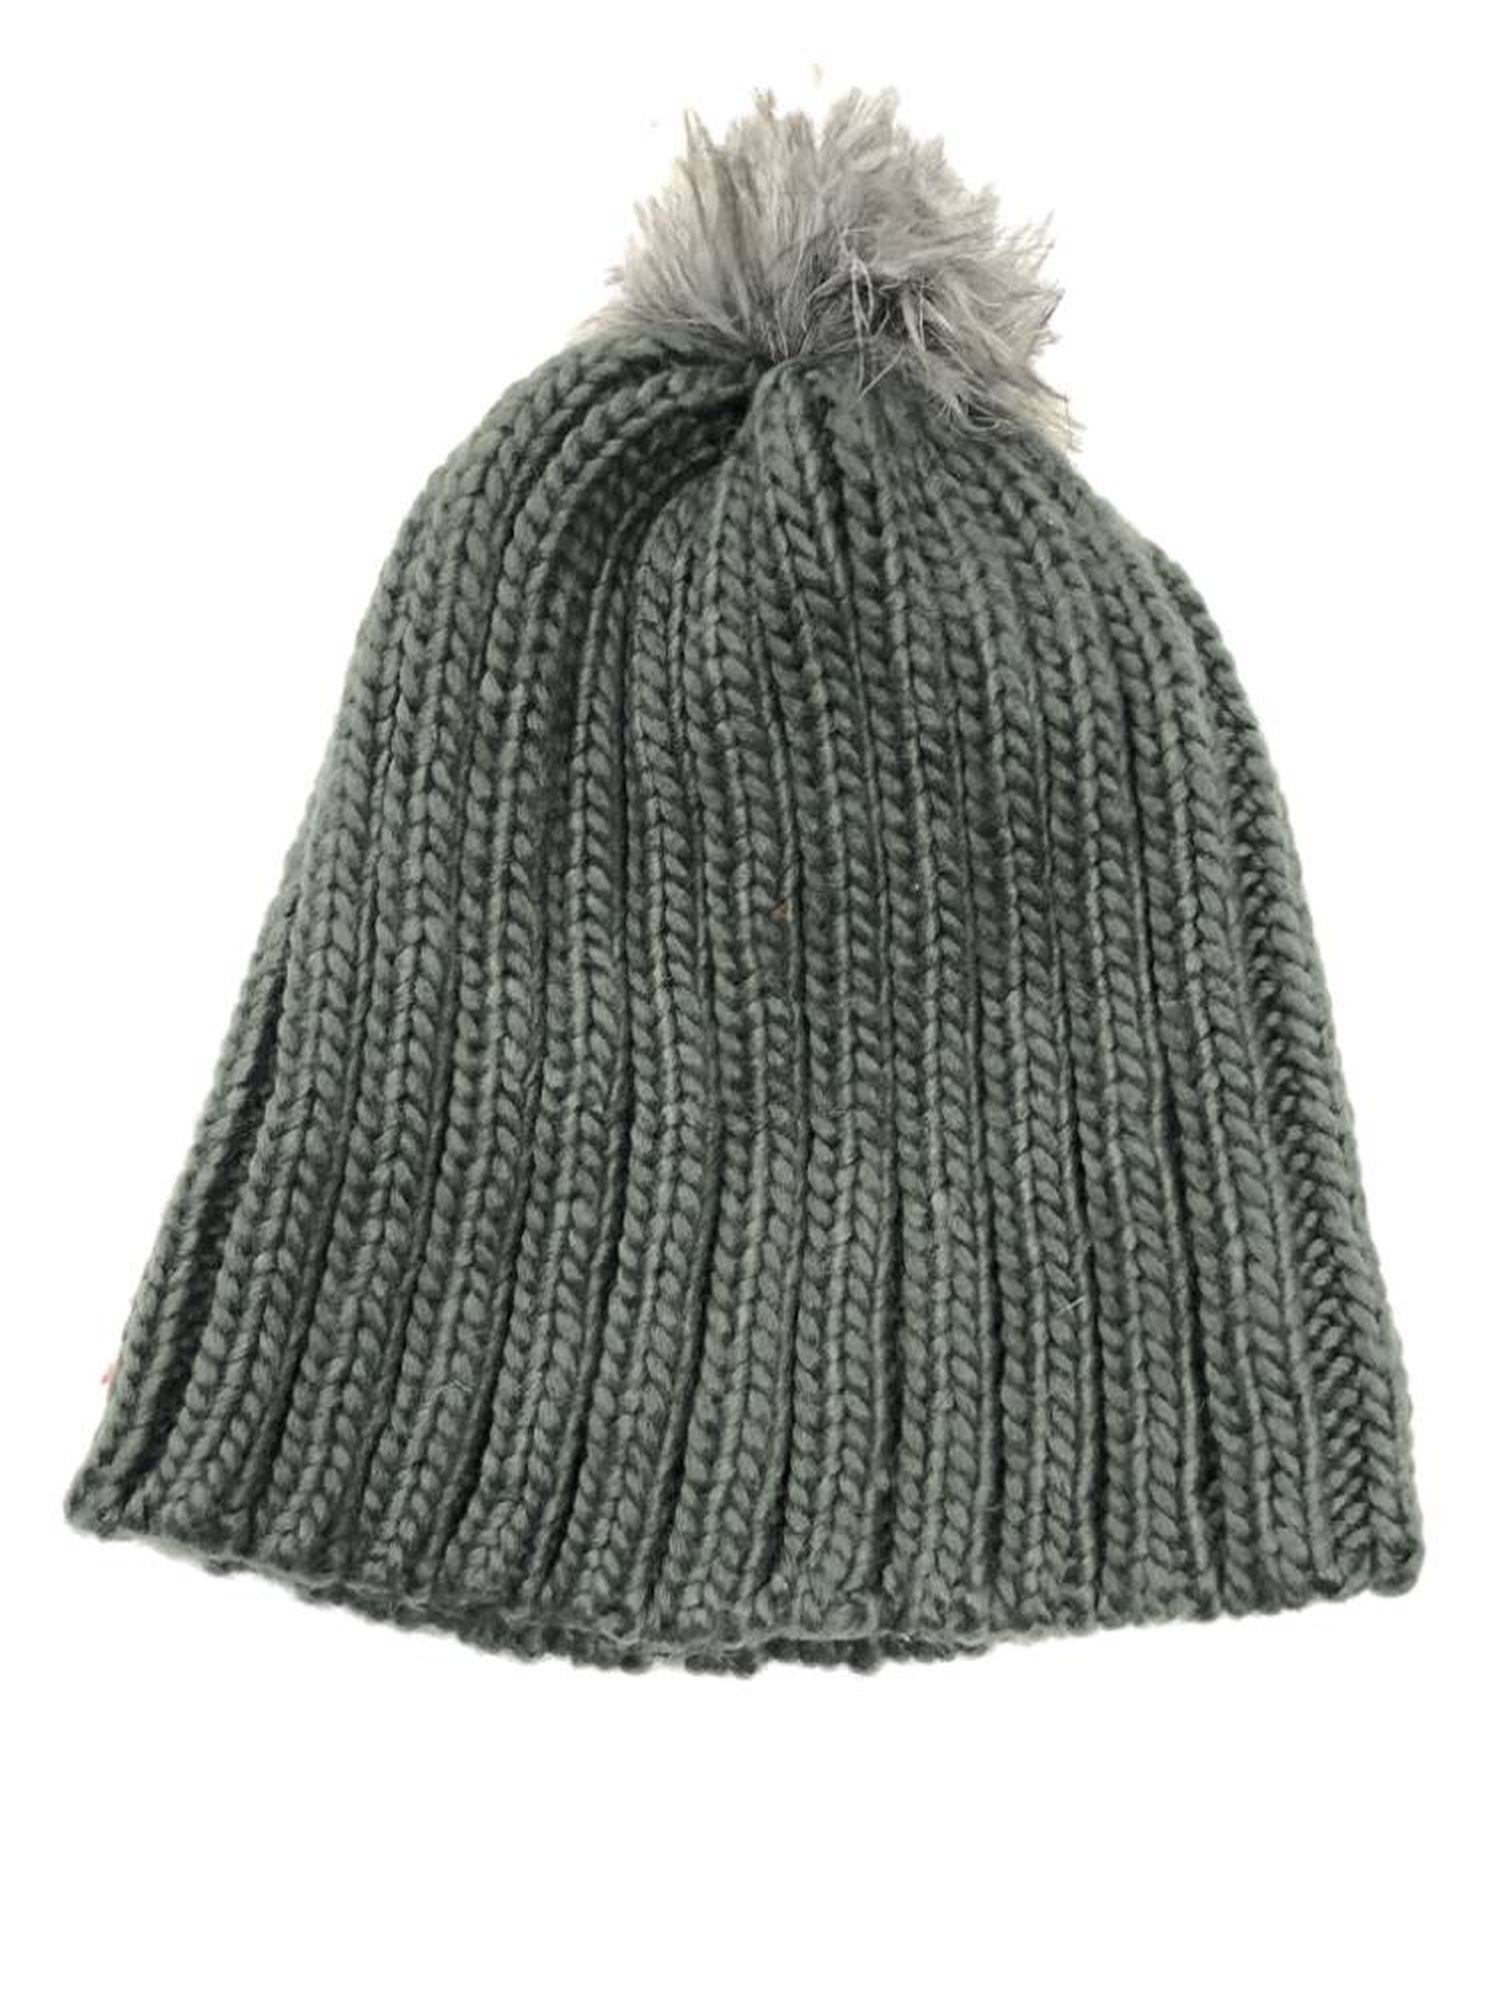 Urbanology Womens Chunky Gray Knit Beanie Winter Hat with Faux Fur Pom Pom